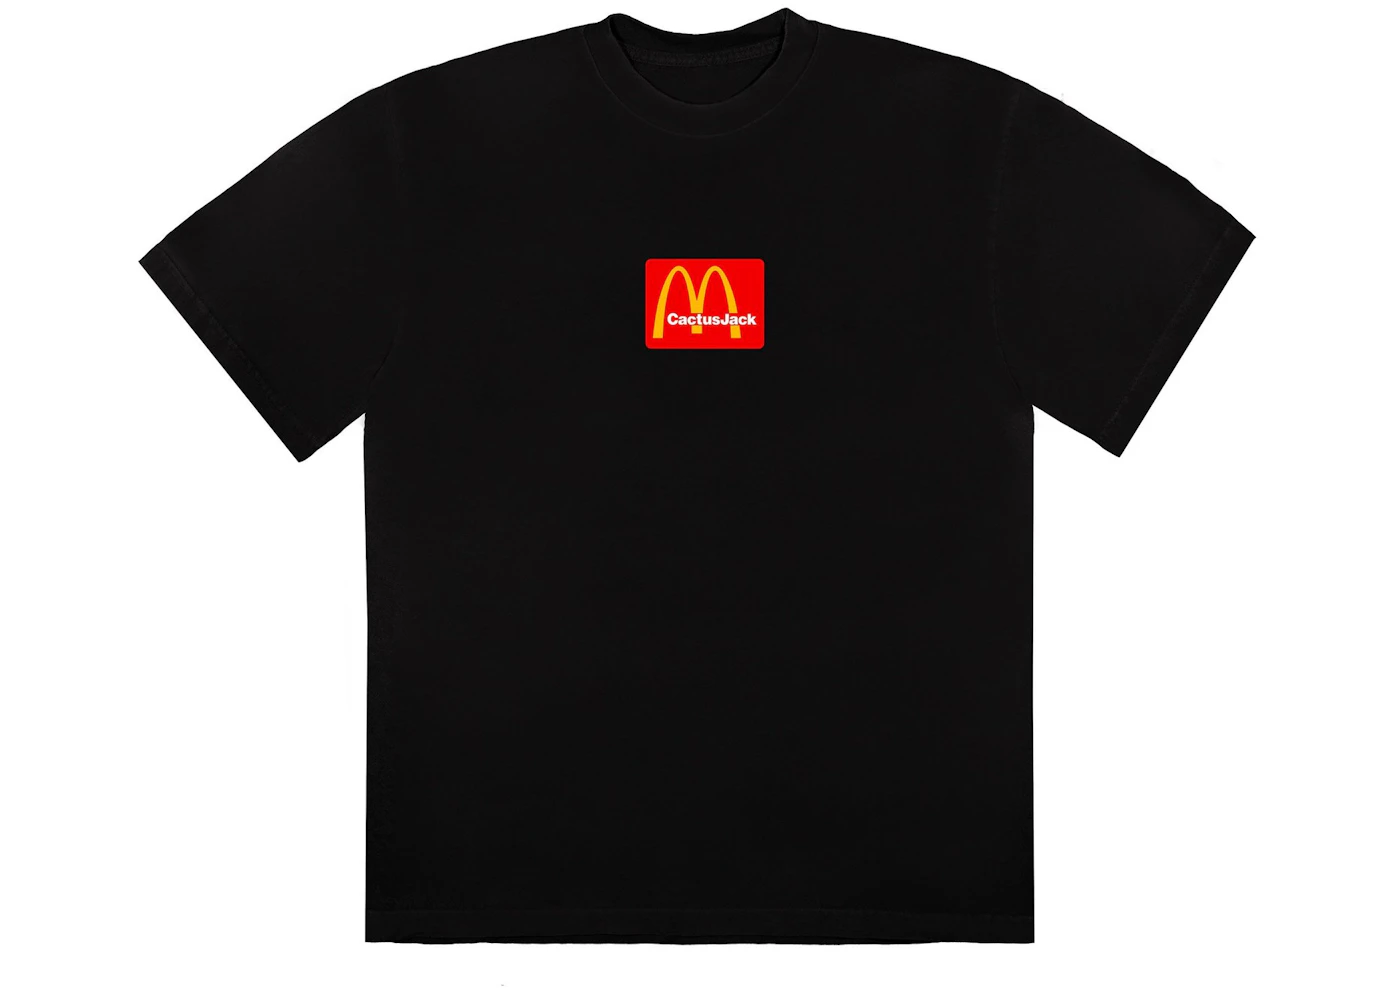 Travis Scott x McDonald's Sesame II T-Shirt Black/Red